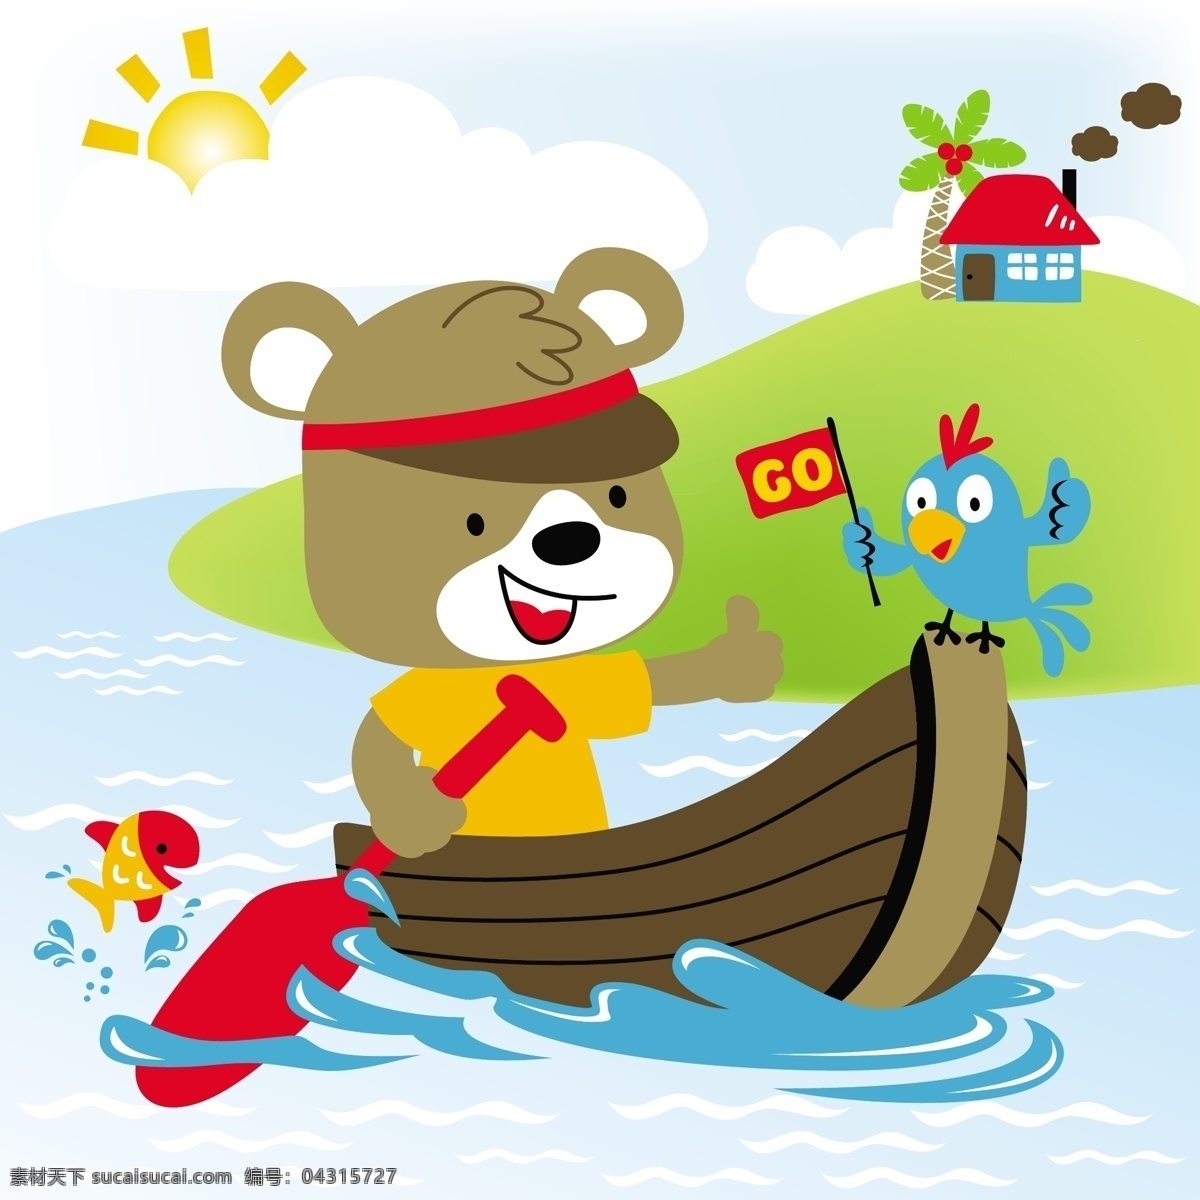 小 熊 划船 加油 可爱 动漫 图 小熊 小动物 儿童绘画